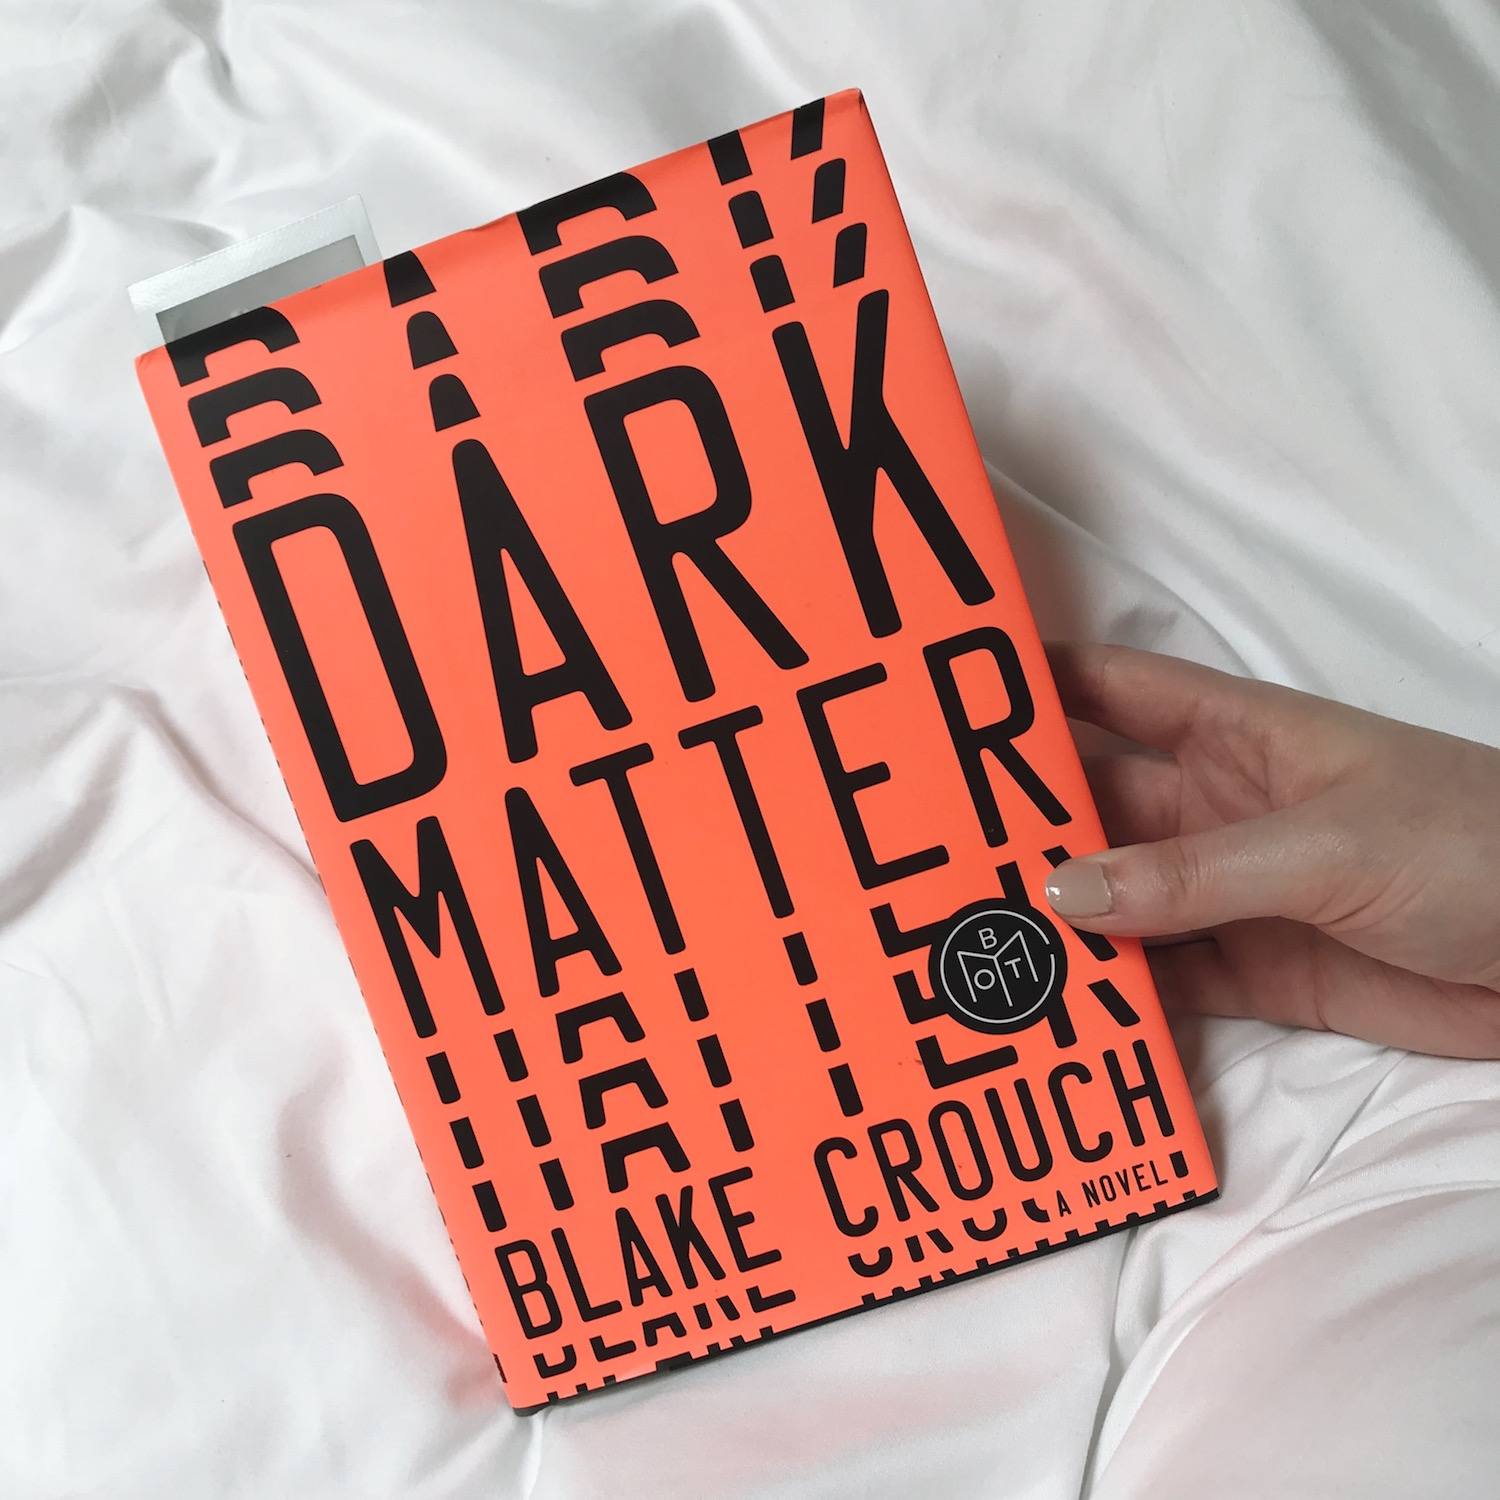 dark matter blake crouch